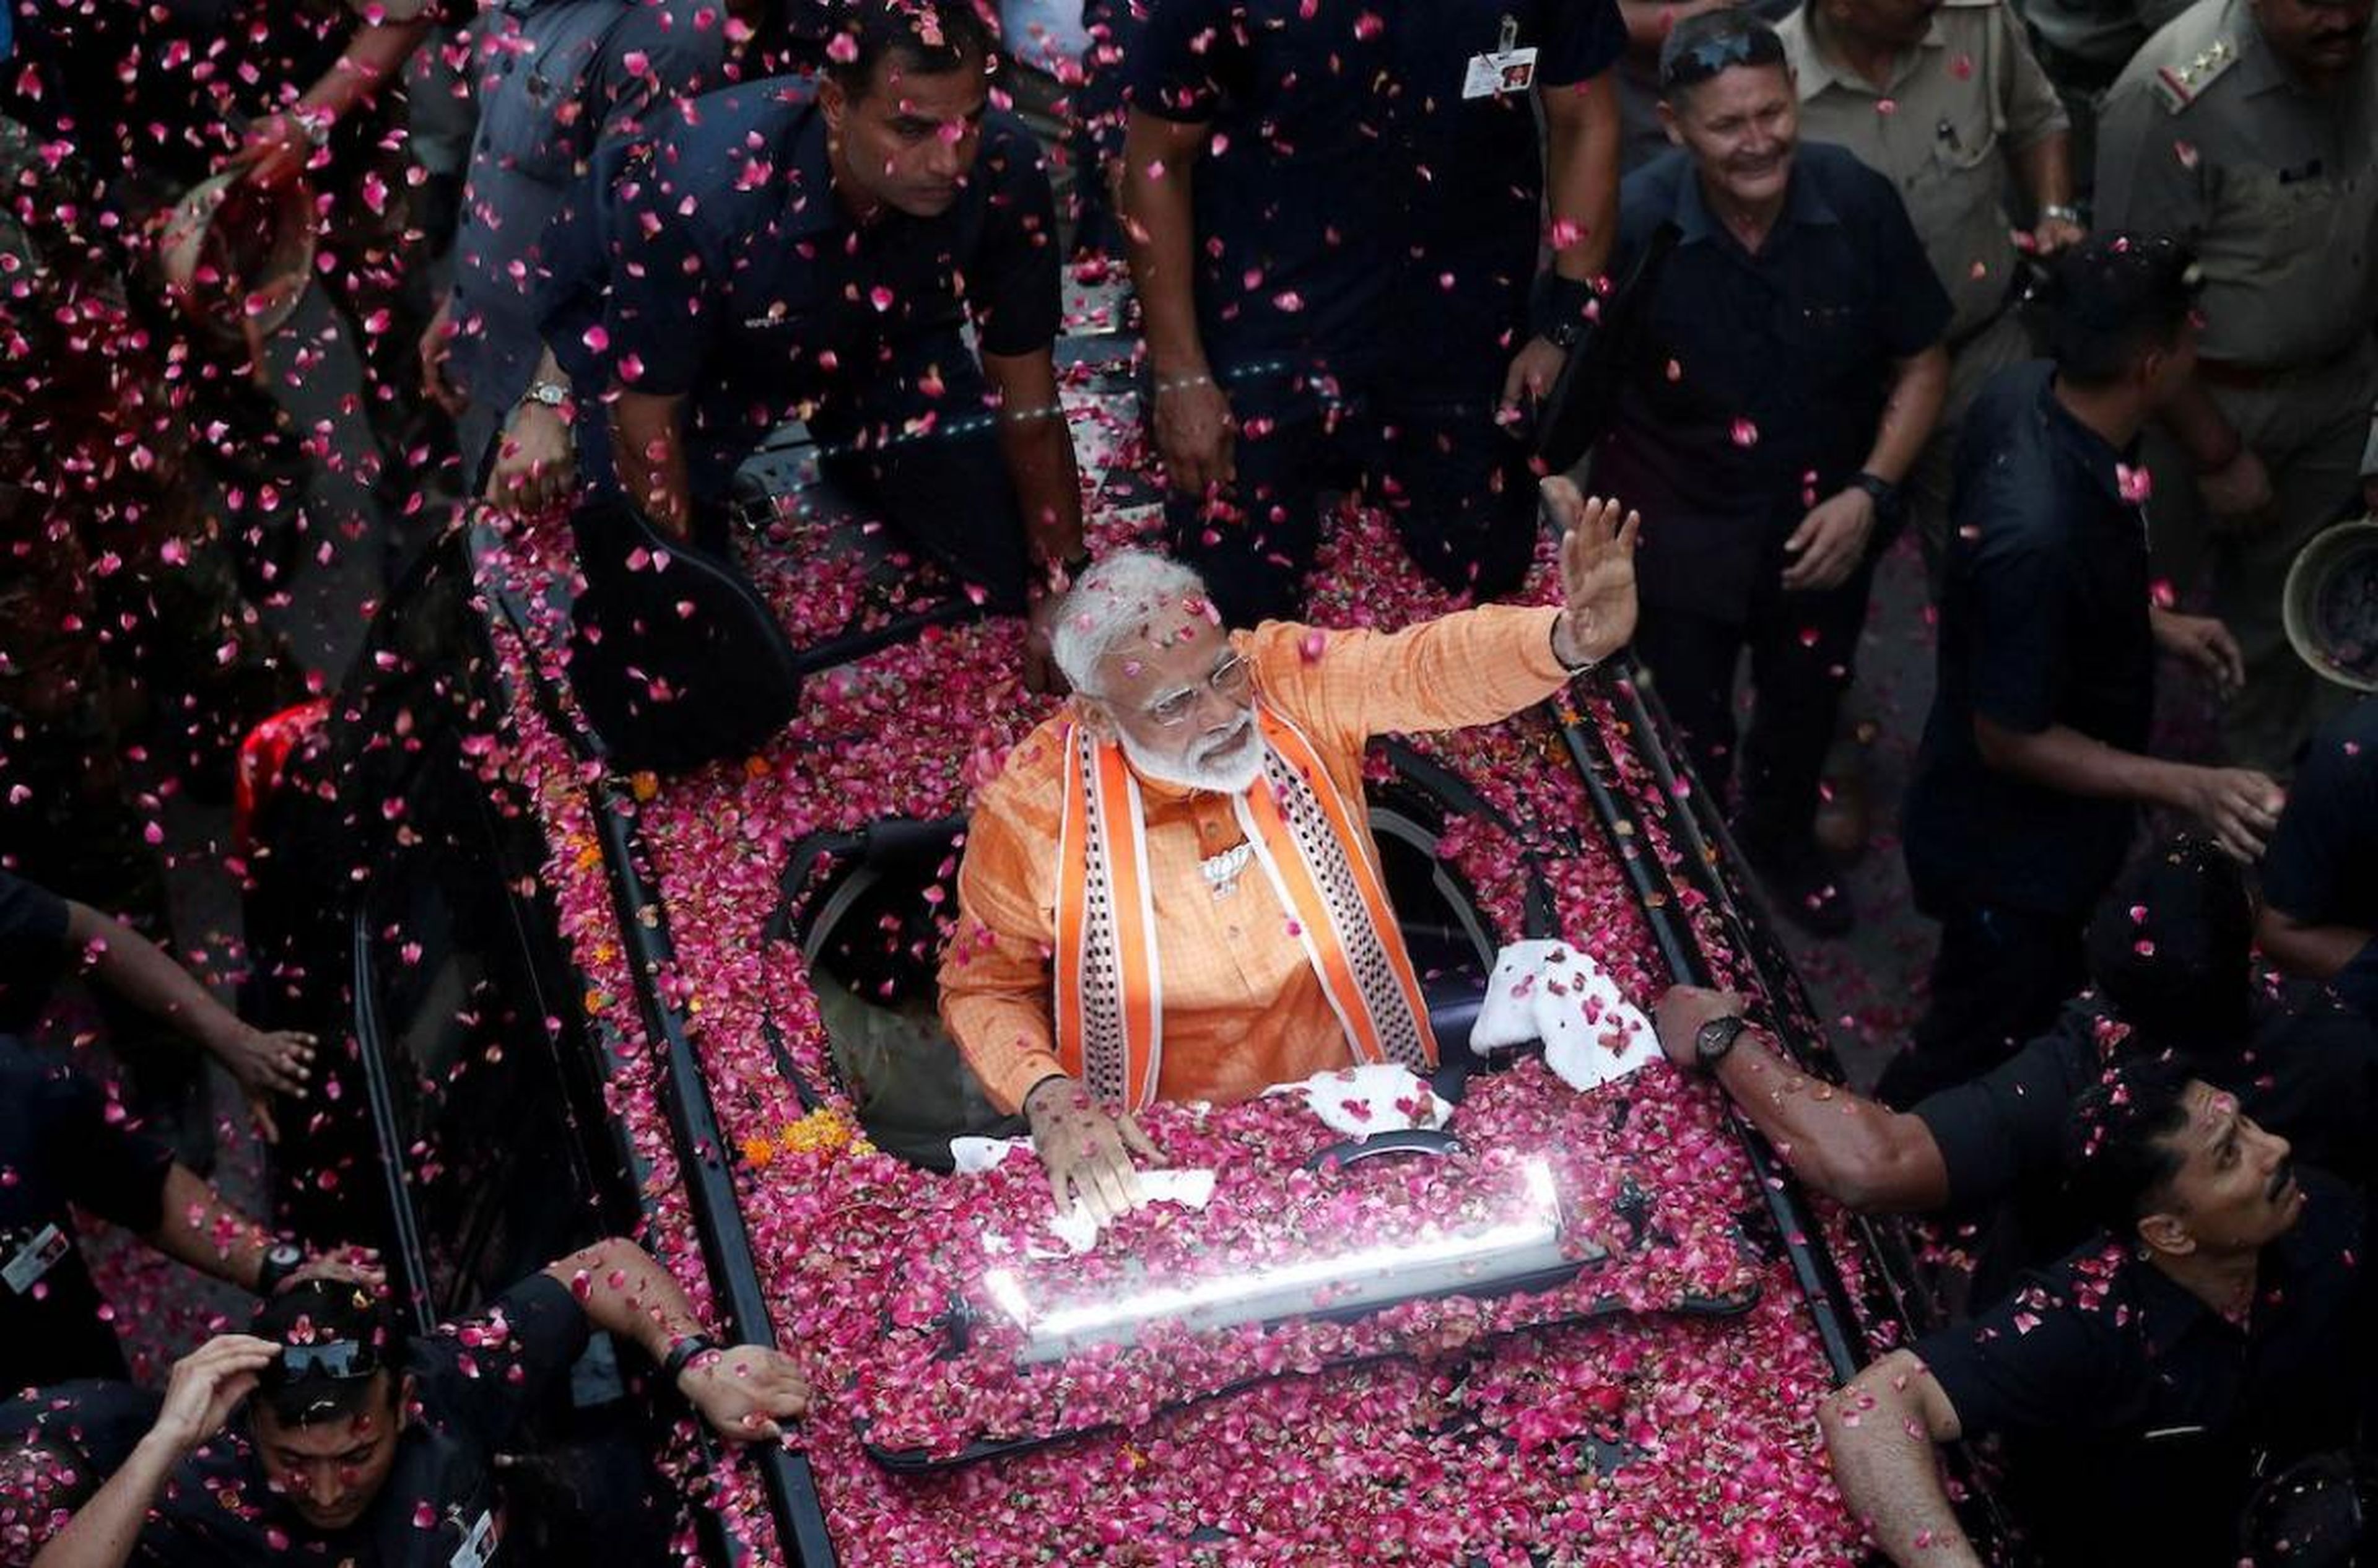 El Primer Ministro de la India, Narendra Modi, saluda a sus simpatizantes durante una gira en Varanasi, India, el 25 de abril. Modi prestó juramento para otro mandato como Primer Ministro en mayo.